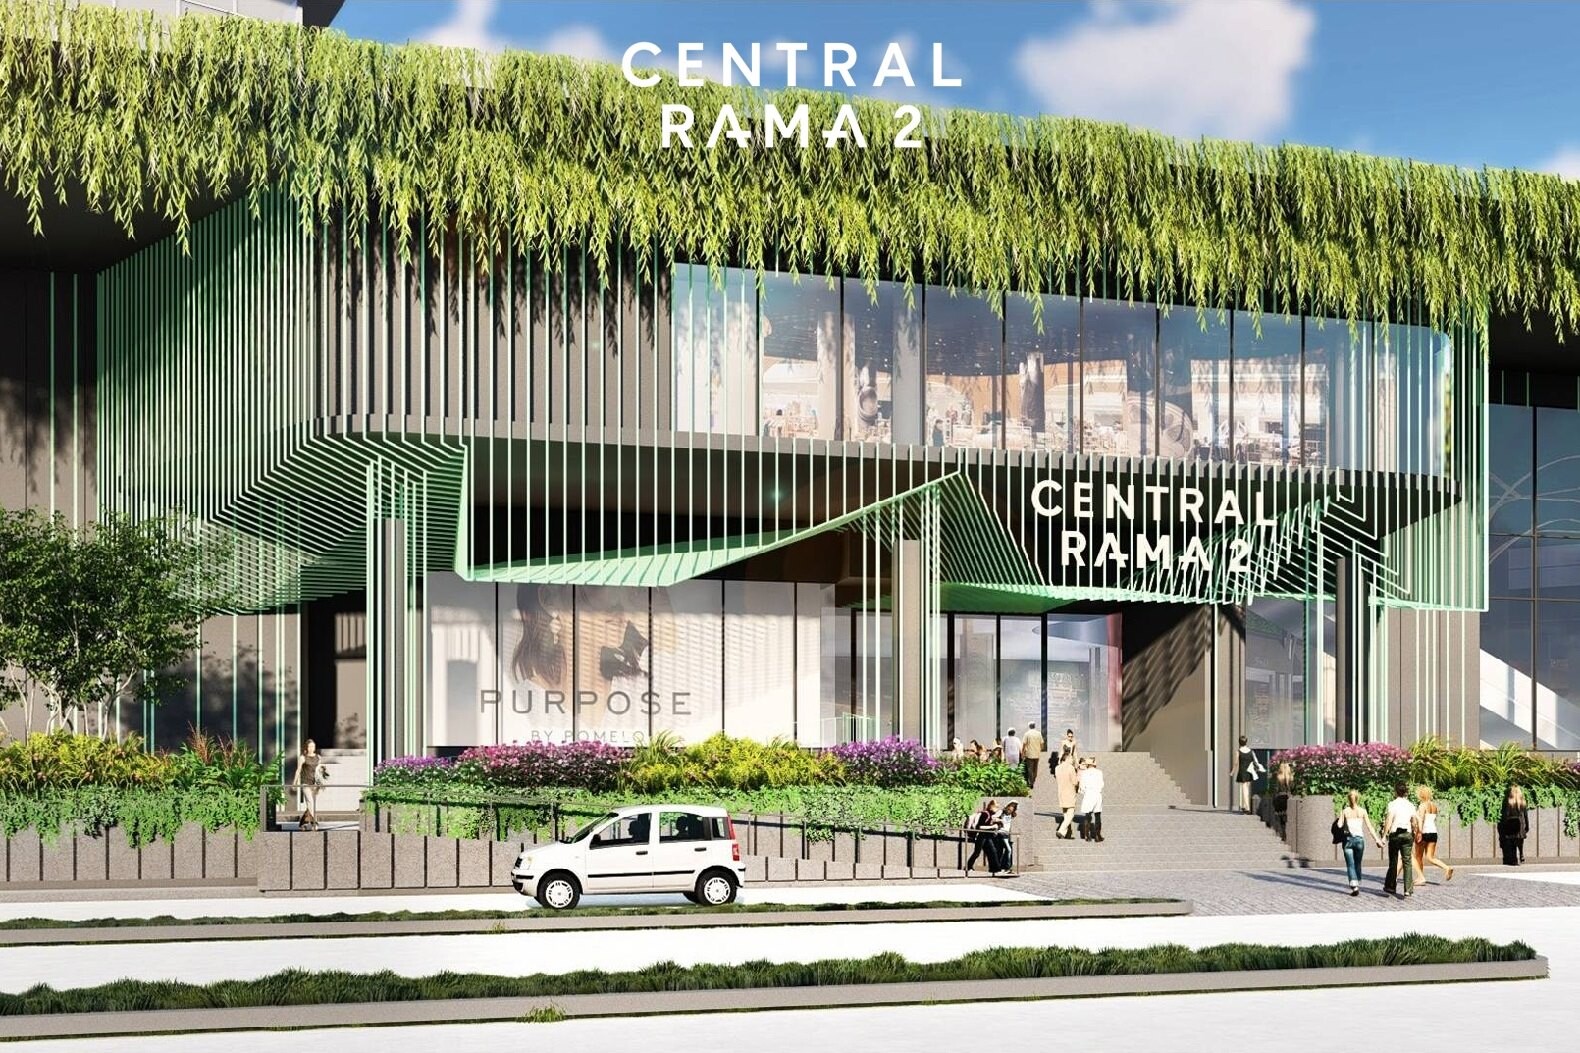 เซ็นทรัลพัฒนา เผย 'เซ็นทรัล พระราม 2' โฉมใหม่ ทุ่ม 1,200 ล้าน ผู้นำตัวจริง Regional Mall อันดับ1 ย่านกรุงเทพฯตอนใต้ พลิก Landscape เมือง ให้พระราม 2 ไม่เหมือนเดิมอีกต่อไป